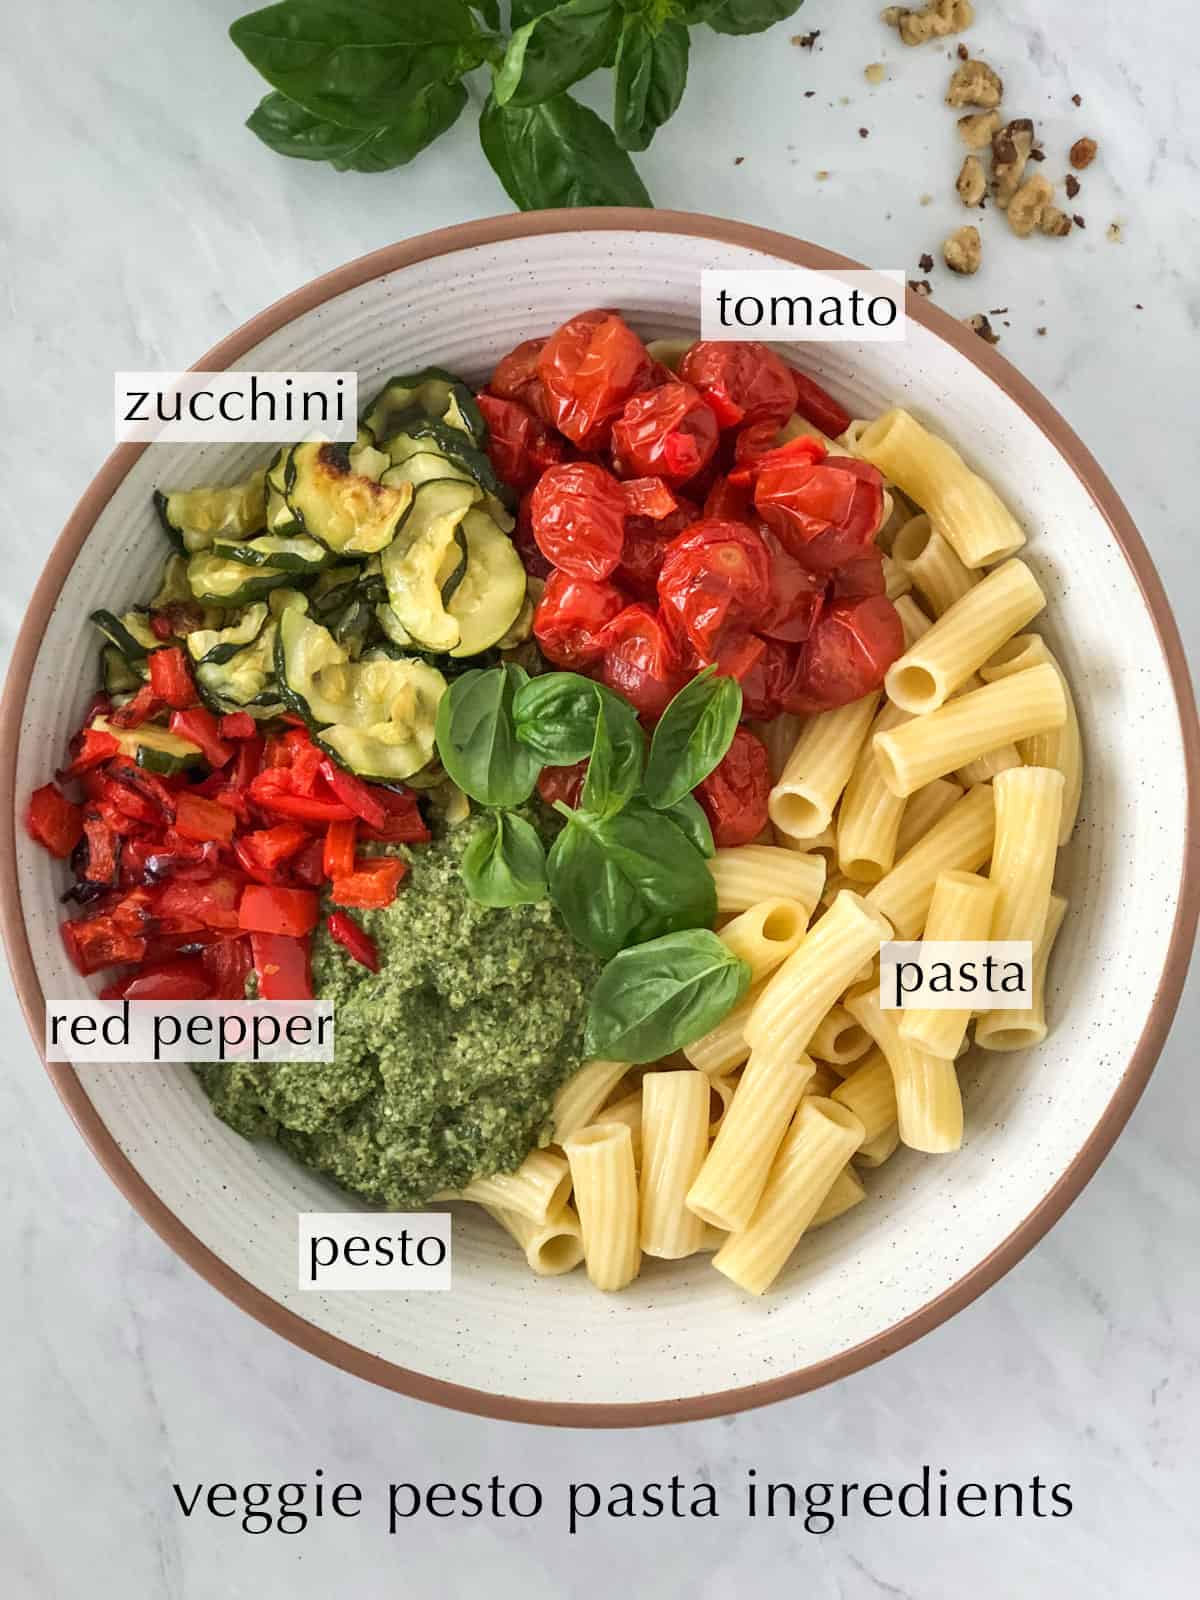 Veggie pesto pasta ingredients in a large mixing bowl.